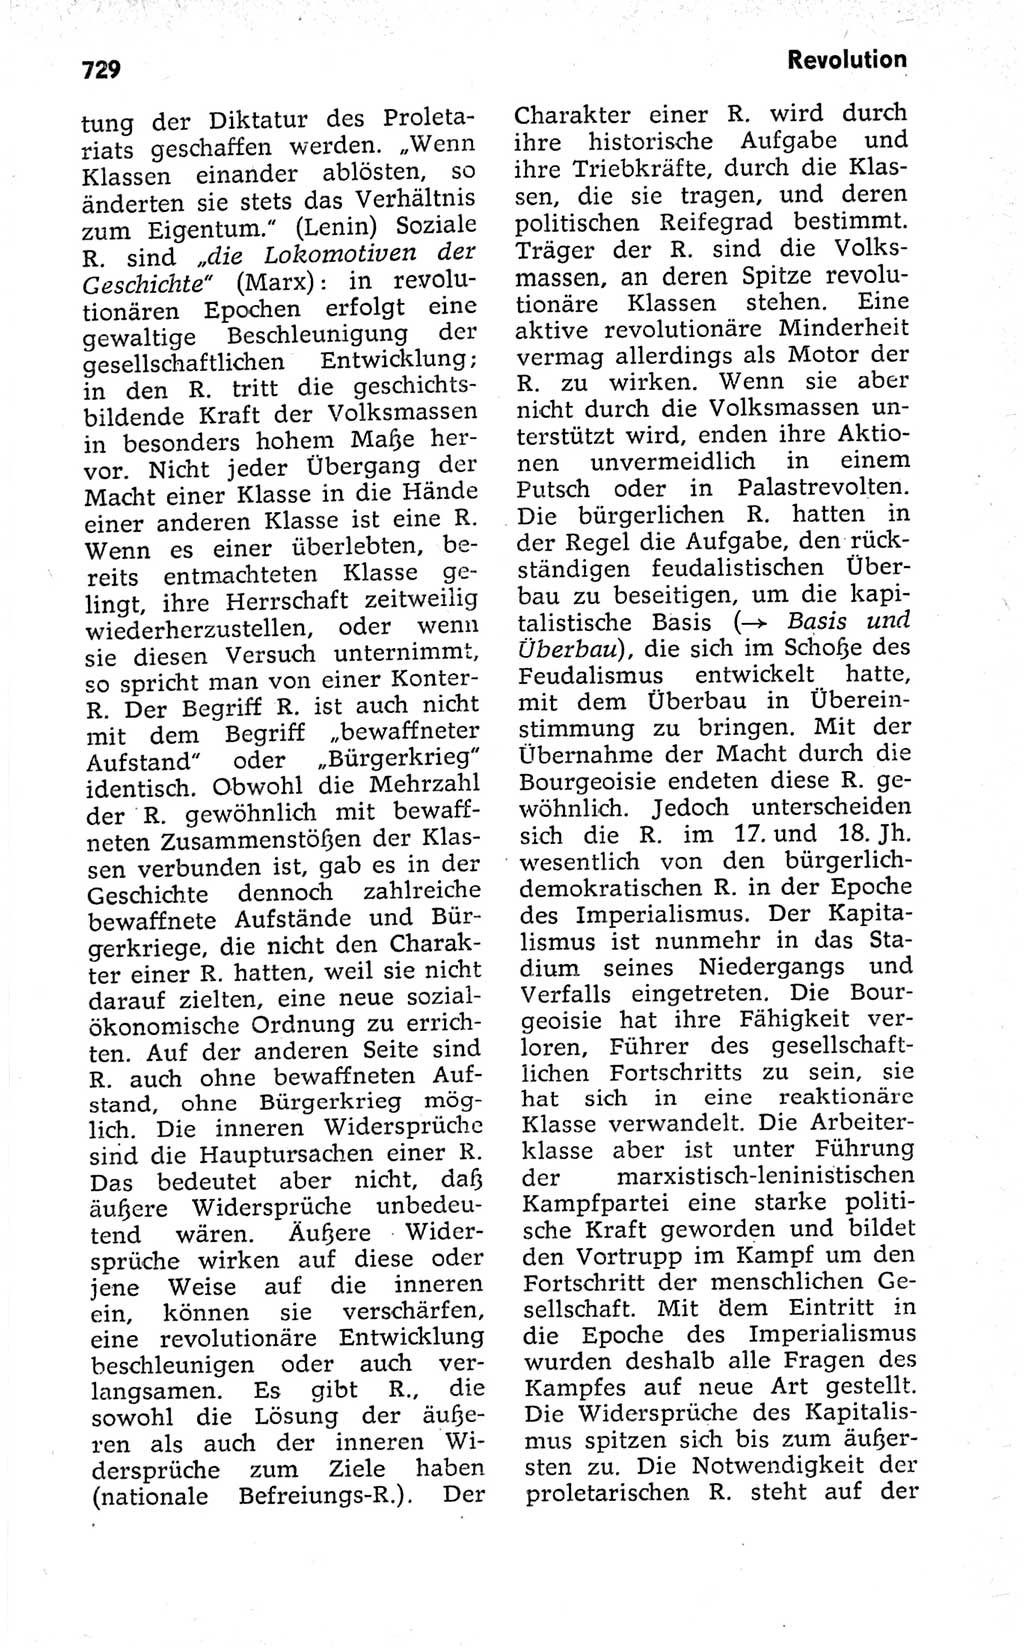 Kleines politisches Wörterbuch [Deutsche Demokratische Republik (DDR)] 1973, Seite 729 (Kl. pol. Wb. DDR 1973, S. 729)